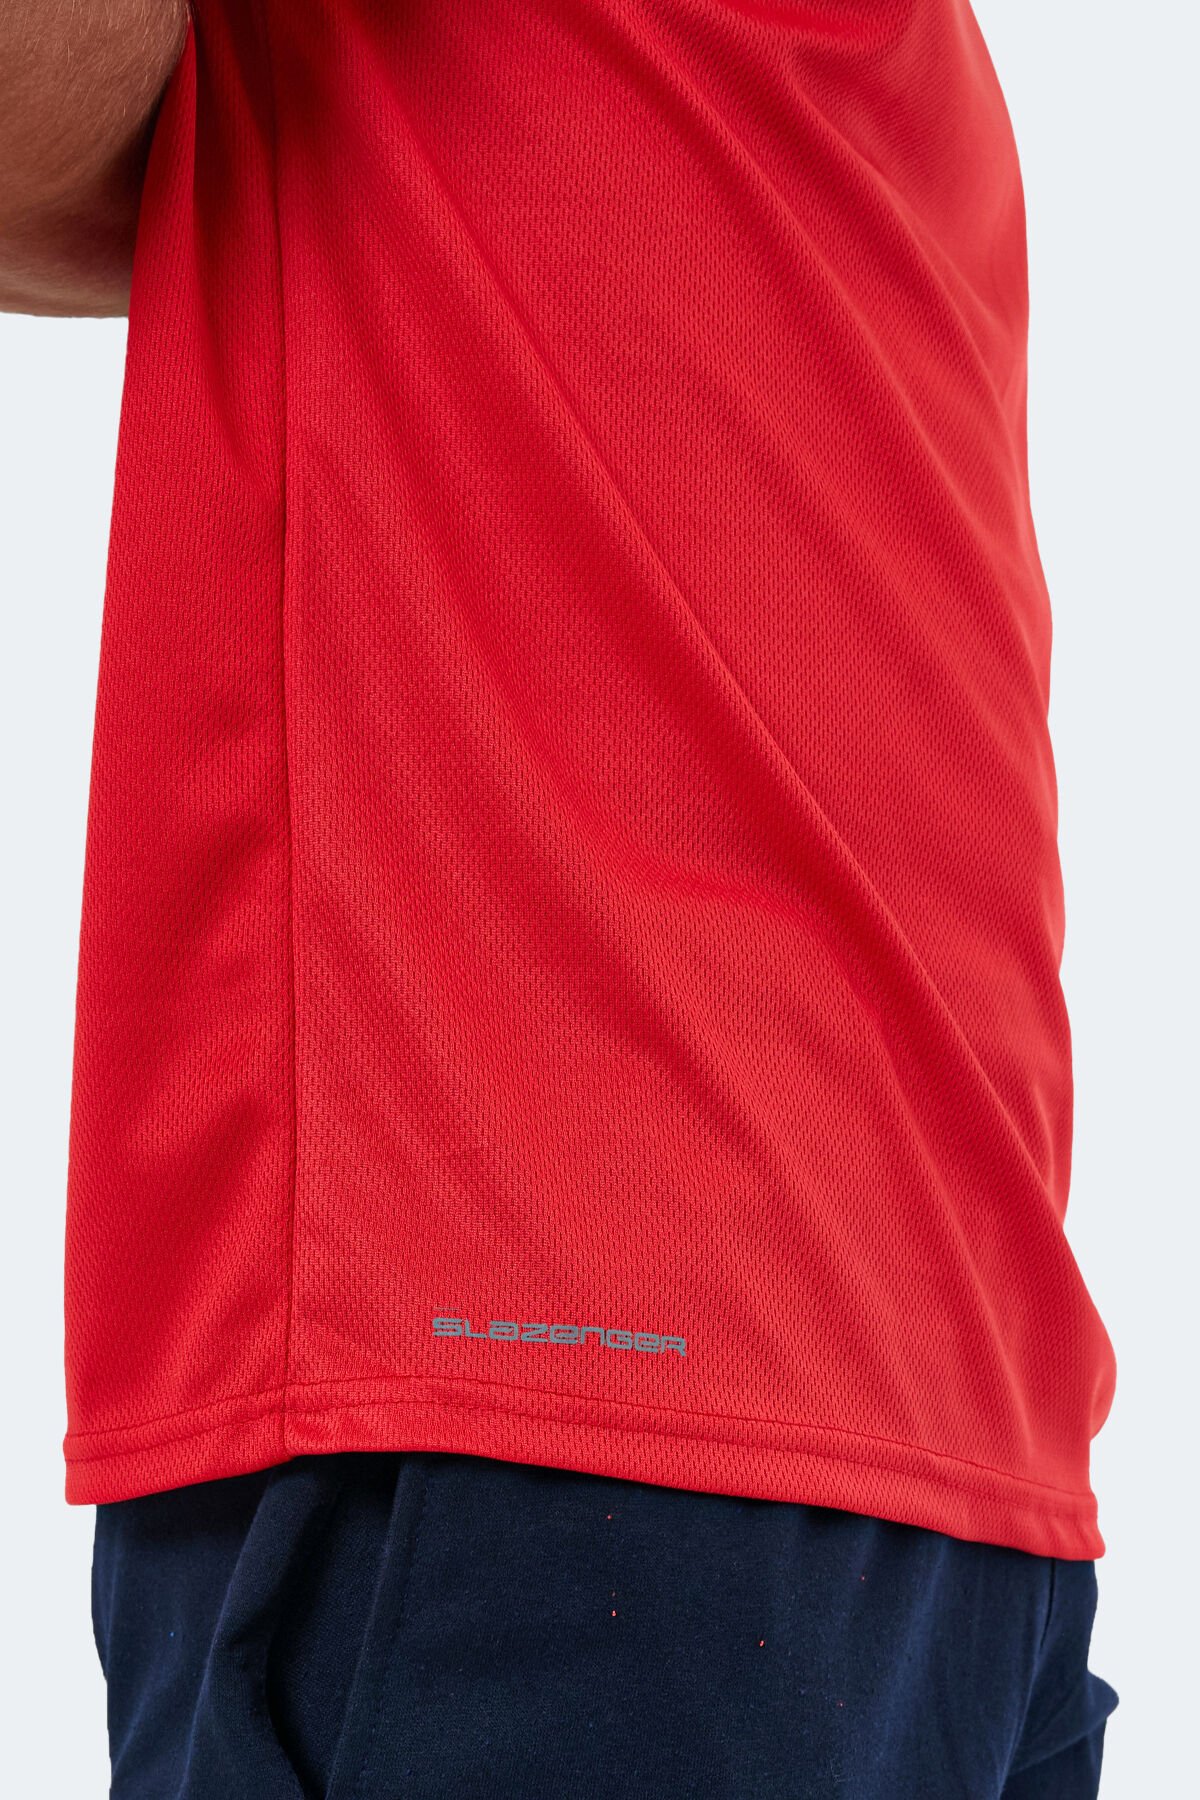 Slazenger OMAR KTN Erkek Kısa Kol T-Shirt Kırmızı - Thumbnail